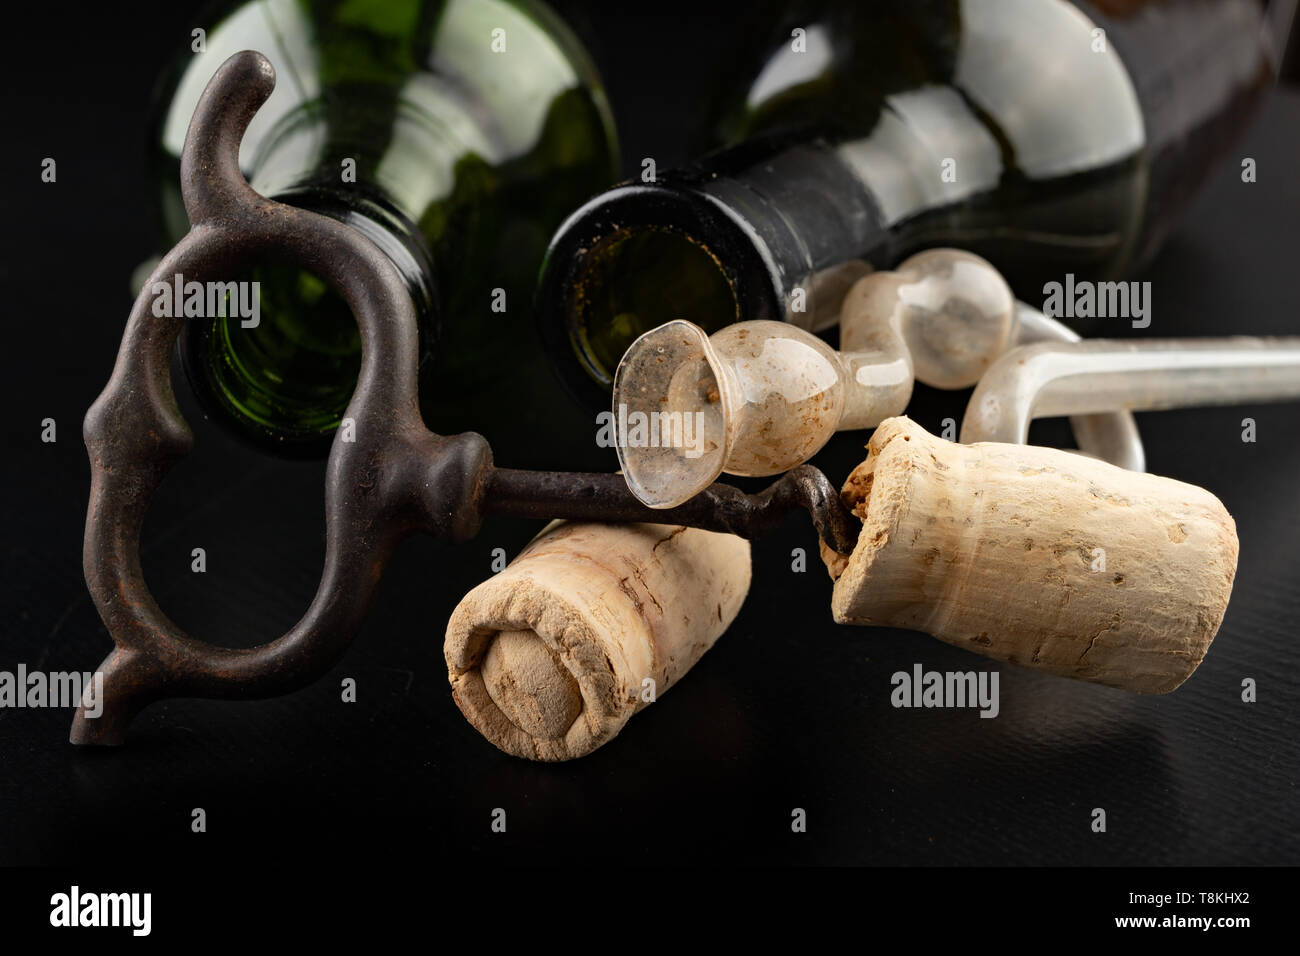 Tubo de fermentación y Sacacorchos en un cuadro negro. Los accesorios  necesarios para preparar vinos caseros. Fondo oscuro Fotografía de stock -  Alamy